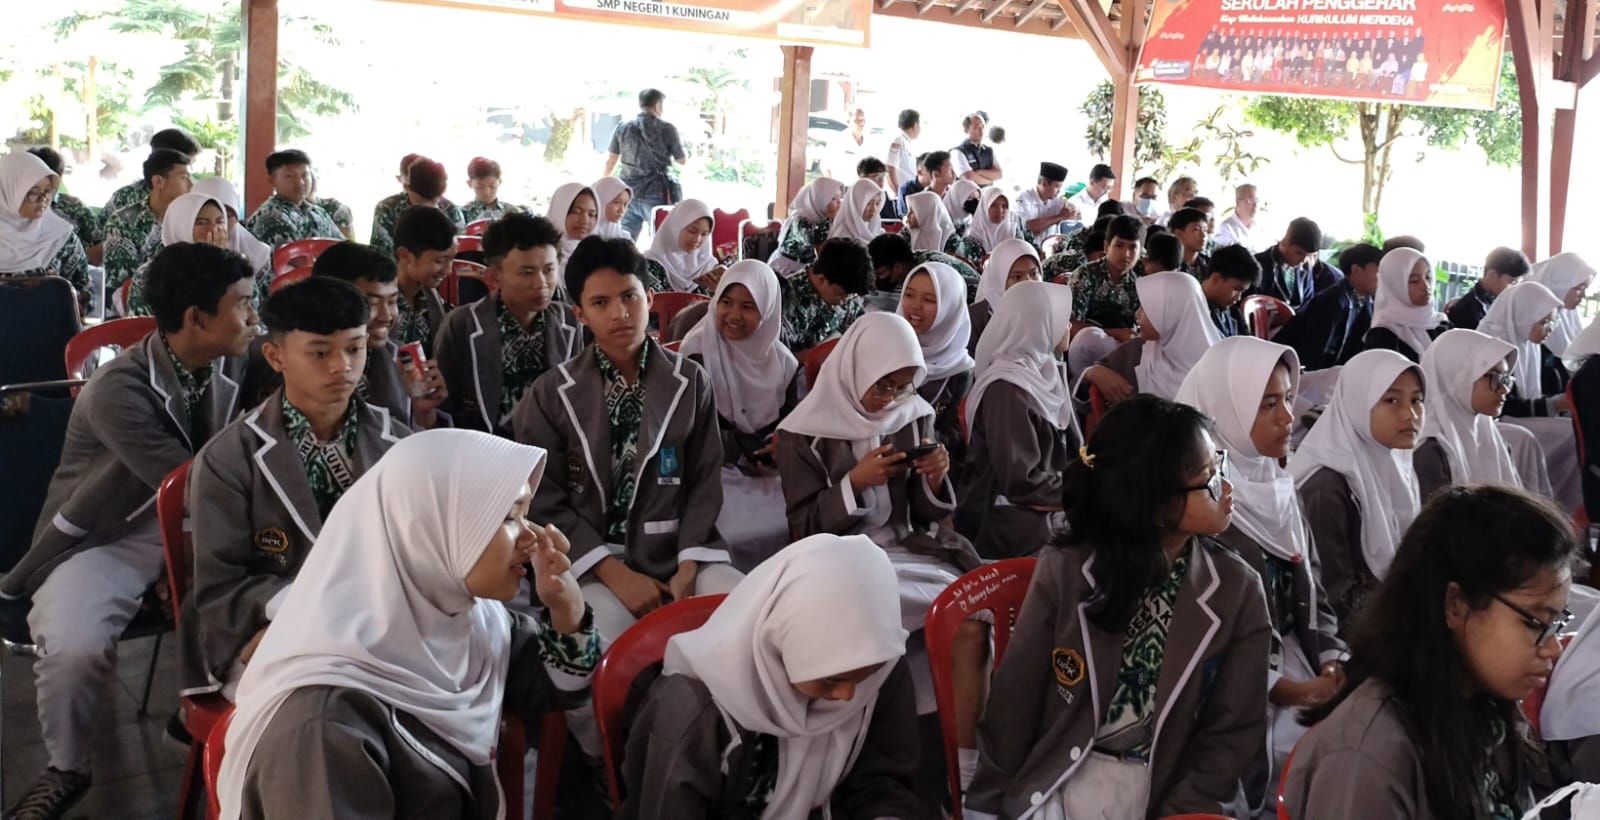 Siswa SMPN 1 Kuningan menghadiri launching Pimda Nyawah dengan Bupati Kuningan dan Kadisdikbud di aula kampus setempat.